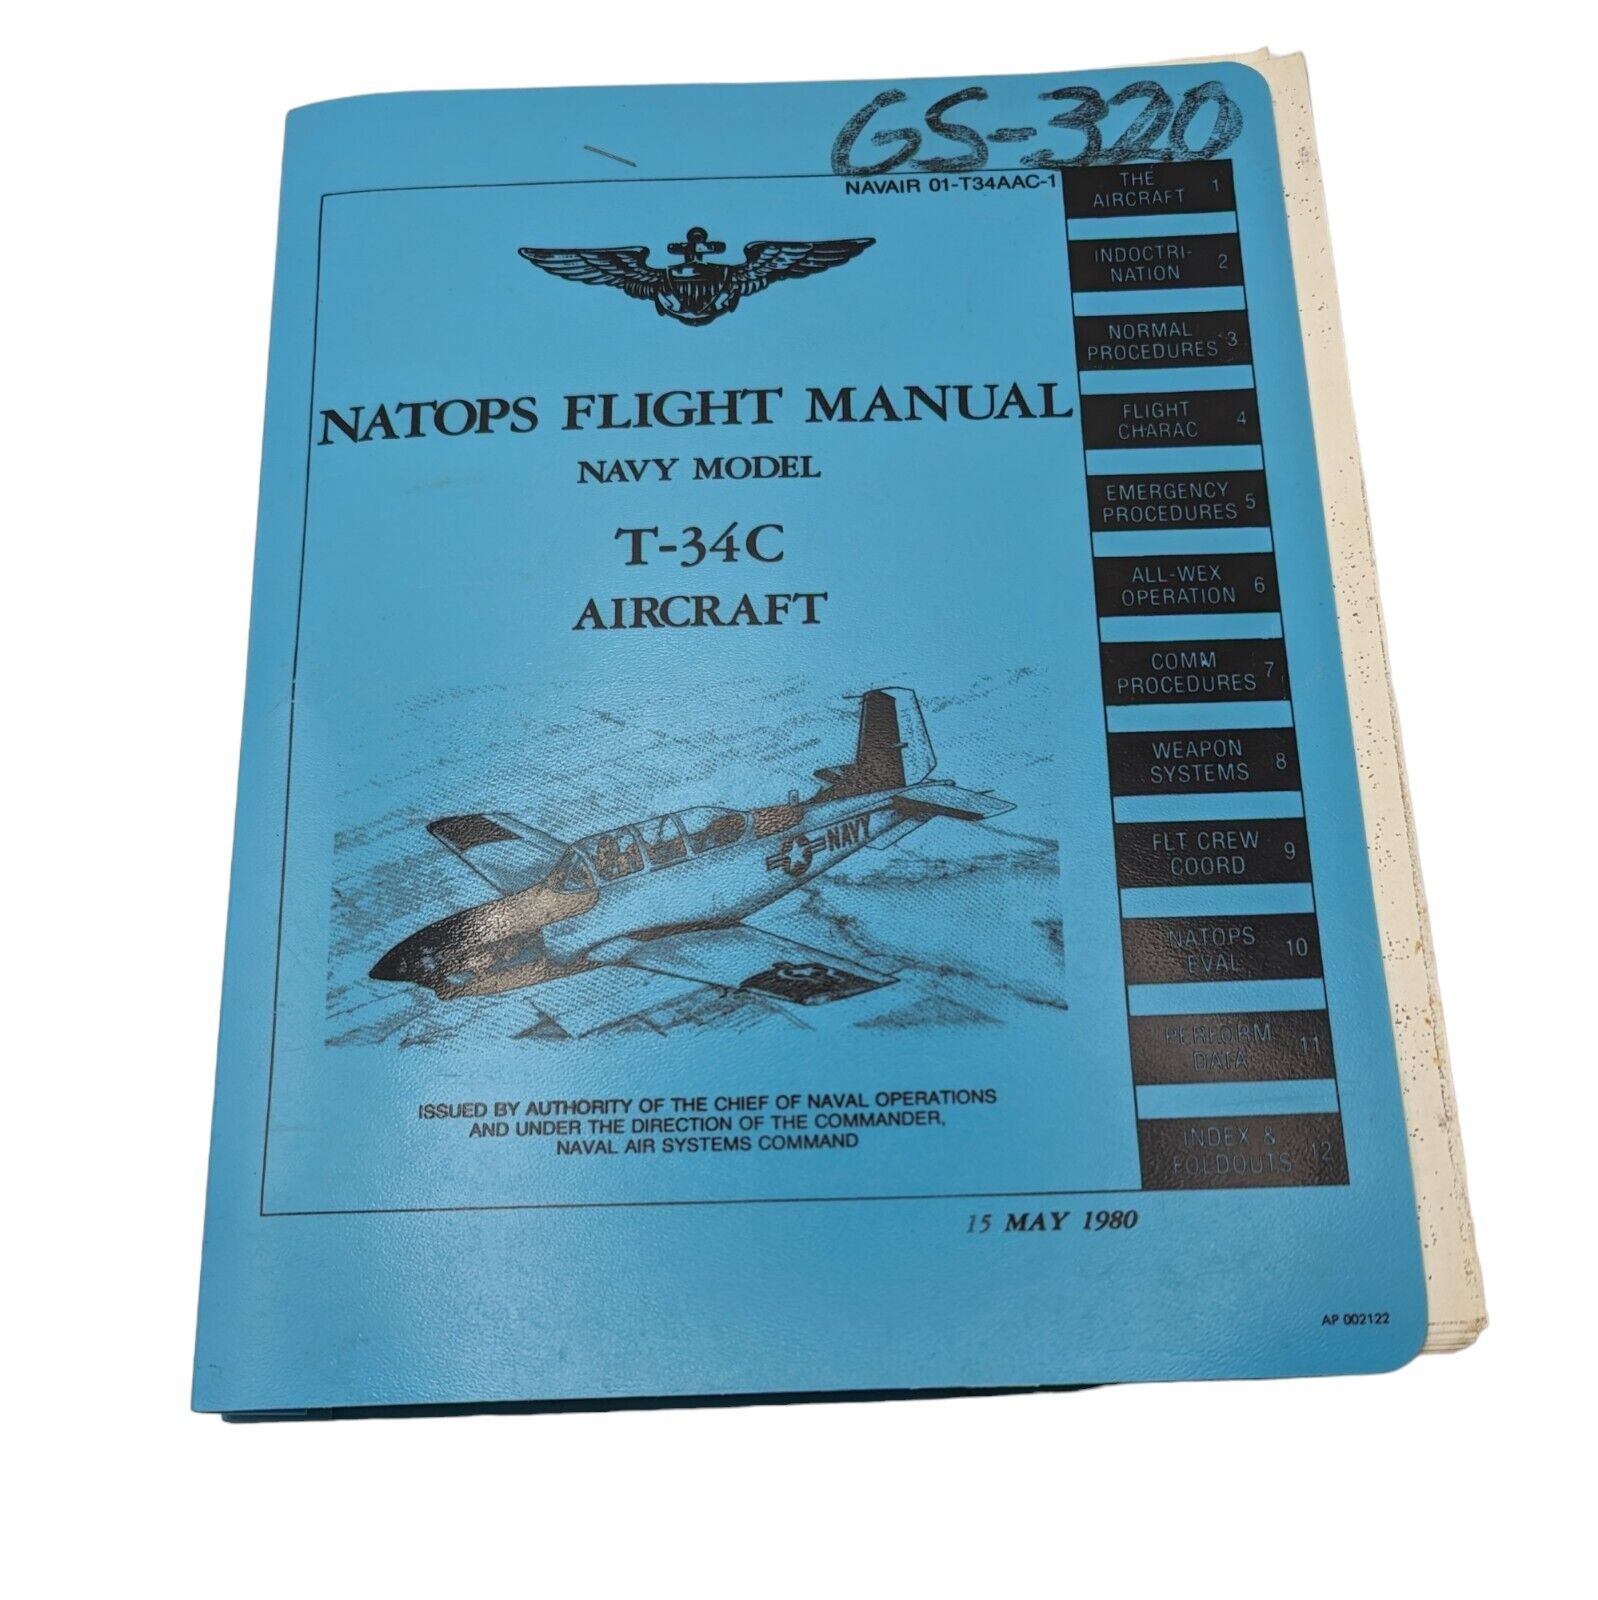 Vtg 1980 USN Beechcraft T-34C Aircraft Natops Flight Manual NAVAIR 01-T34AAC-1